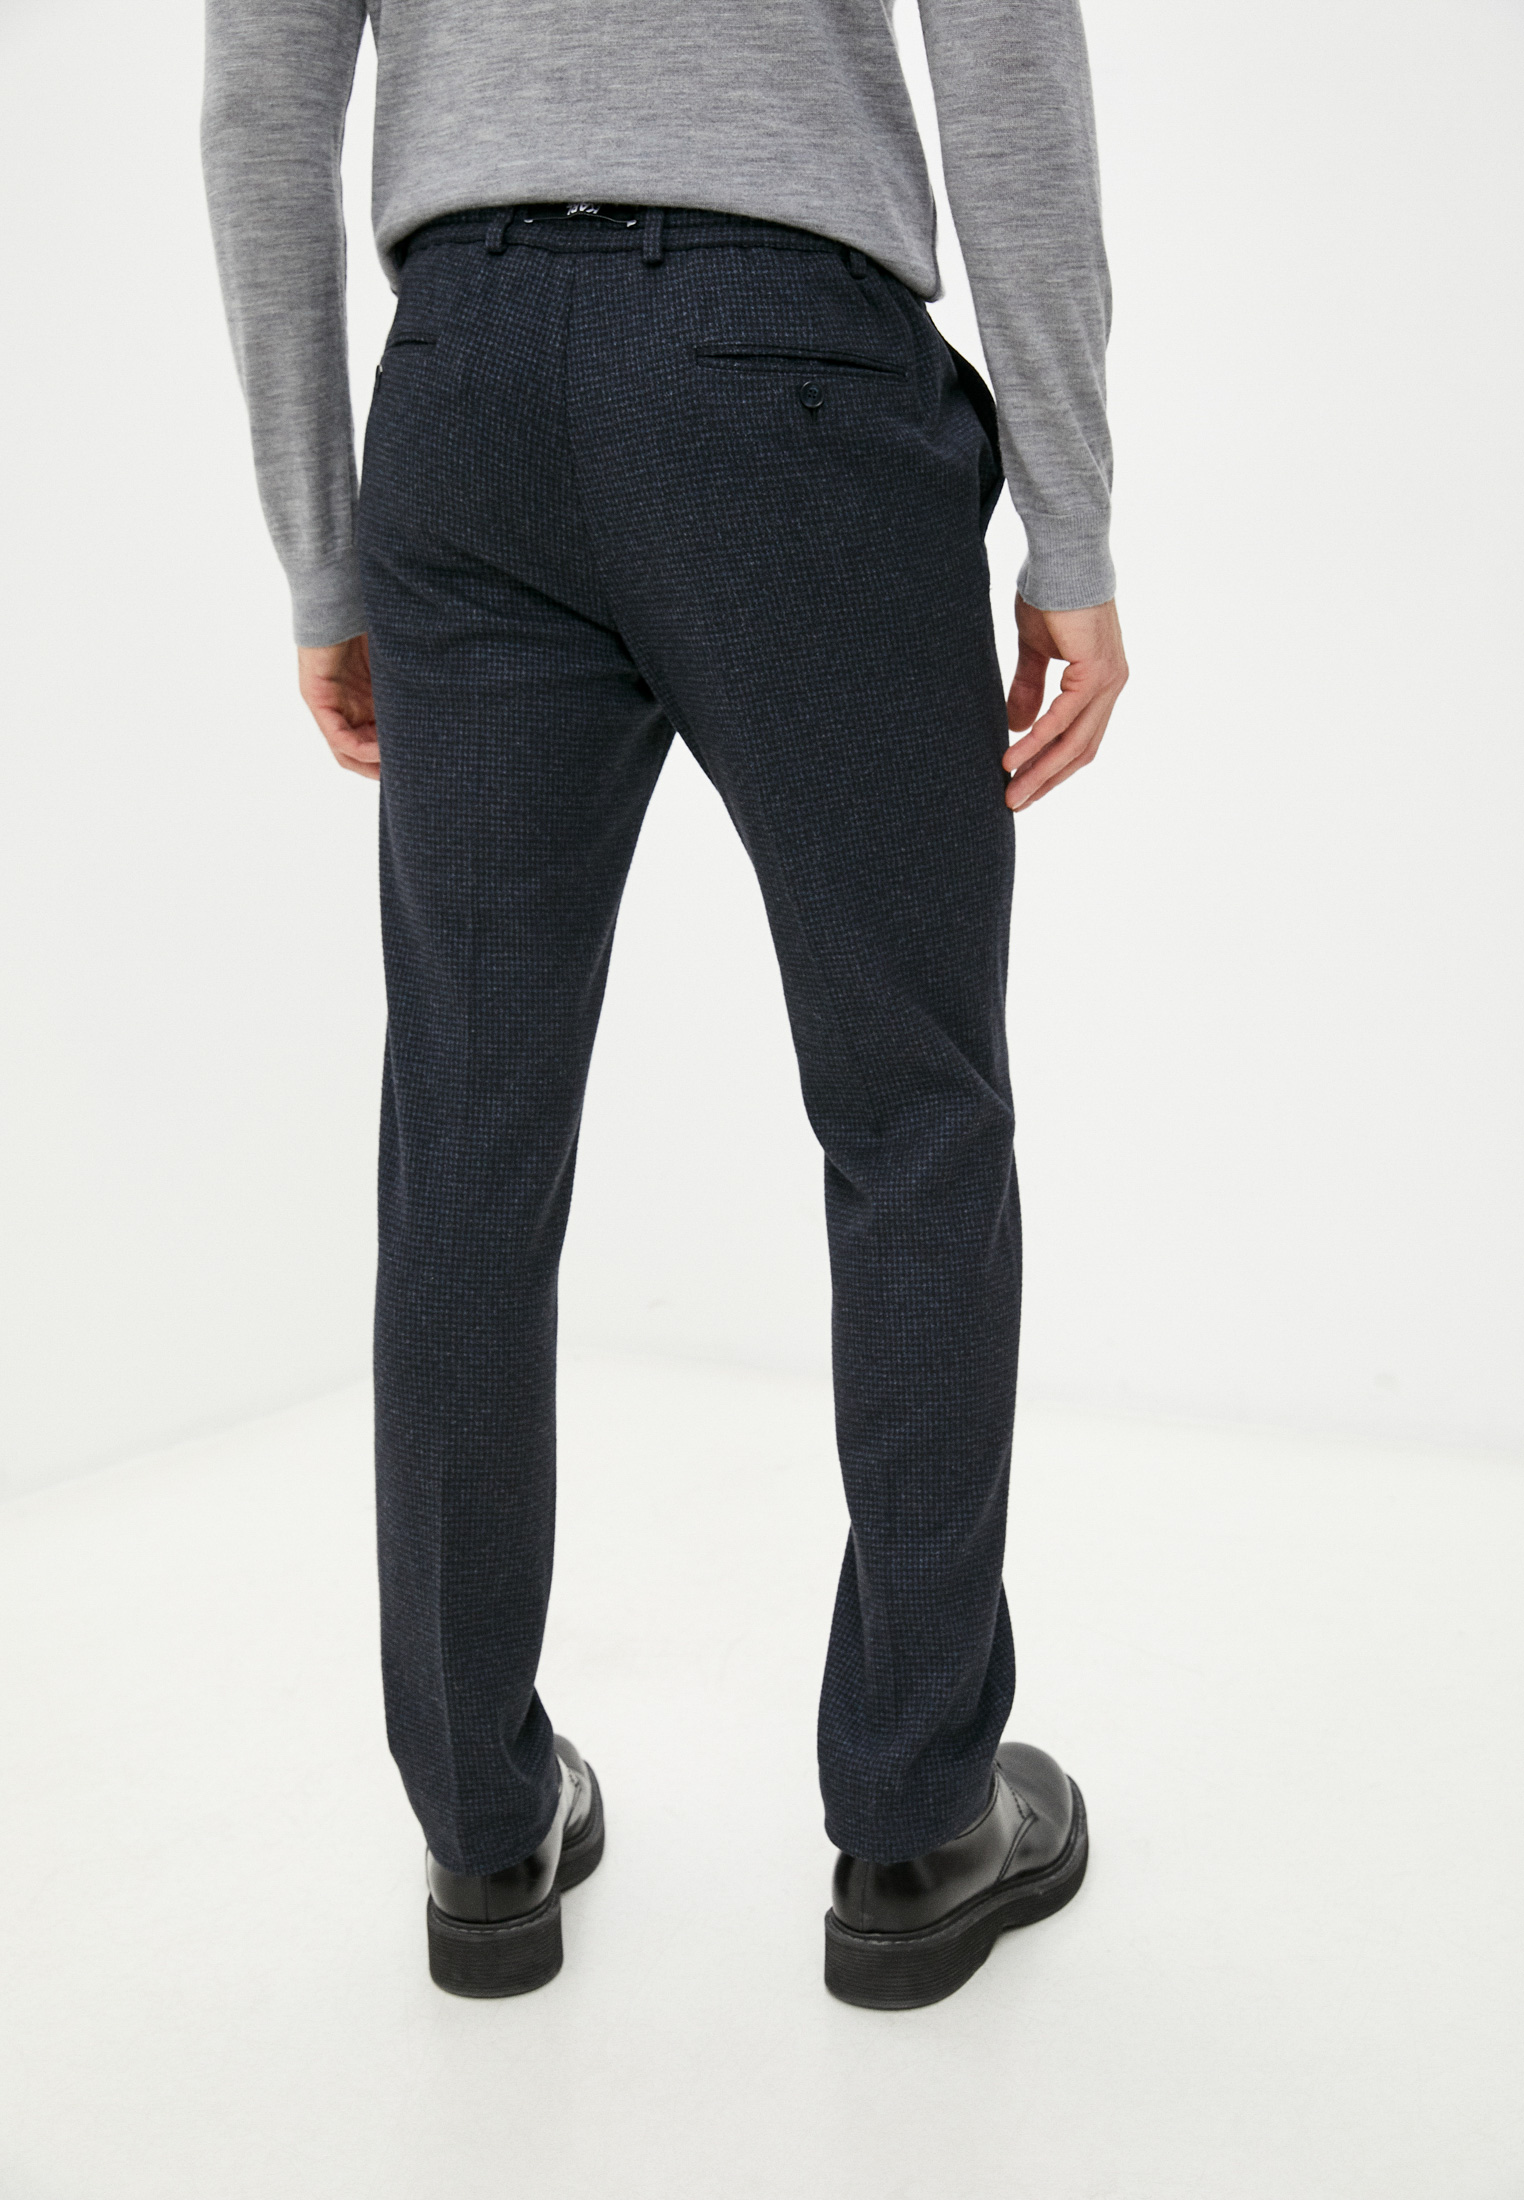 Мужские повседневные брюки Karl Lagerfeld (Карл Лагерфельд) 512047-255056: изображение 4